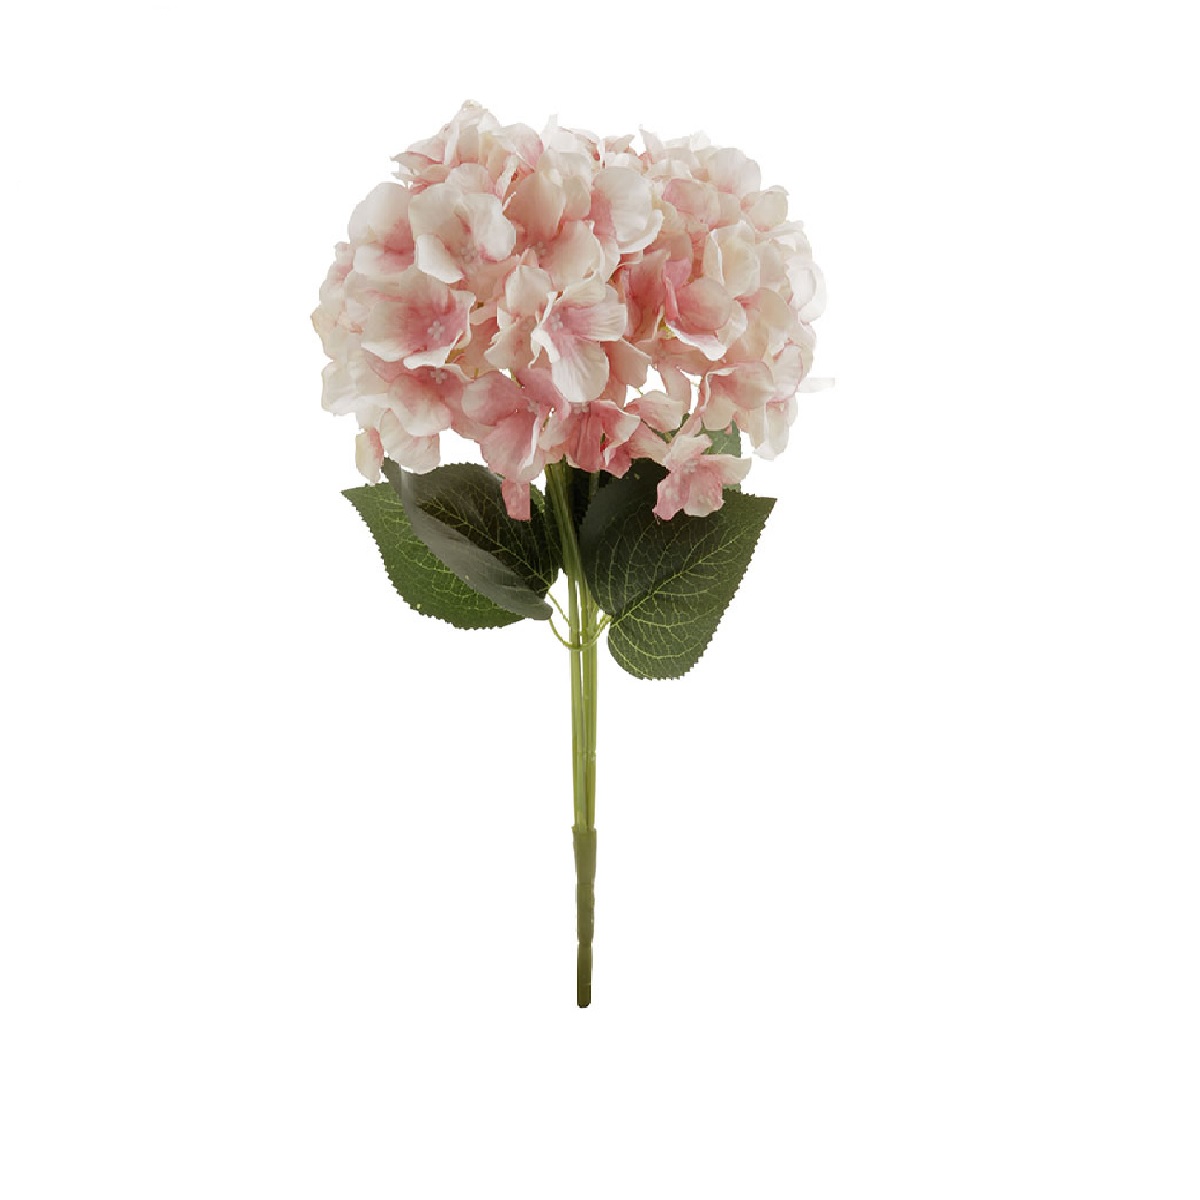 Dekorační květina - Hortenzie barva růžovo-smetanová